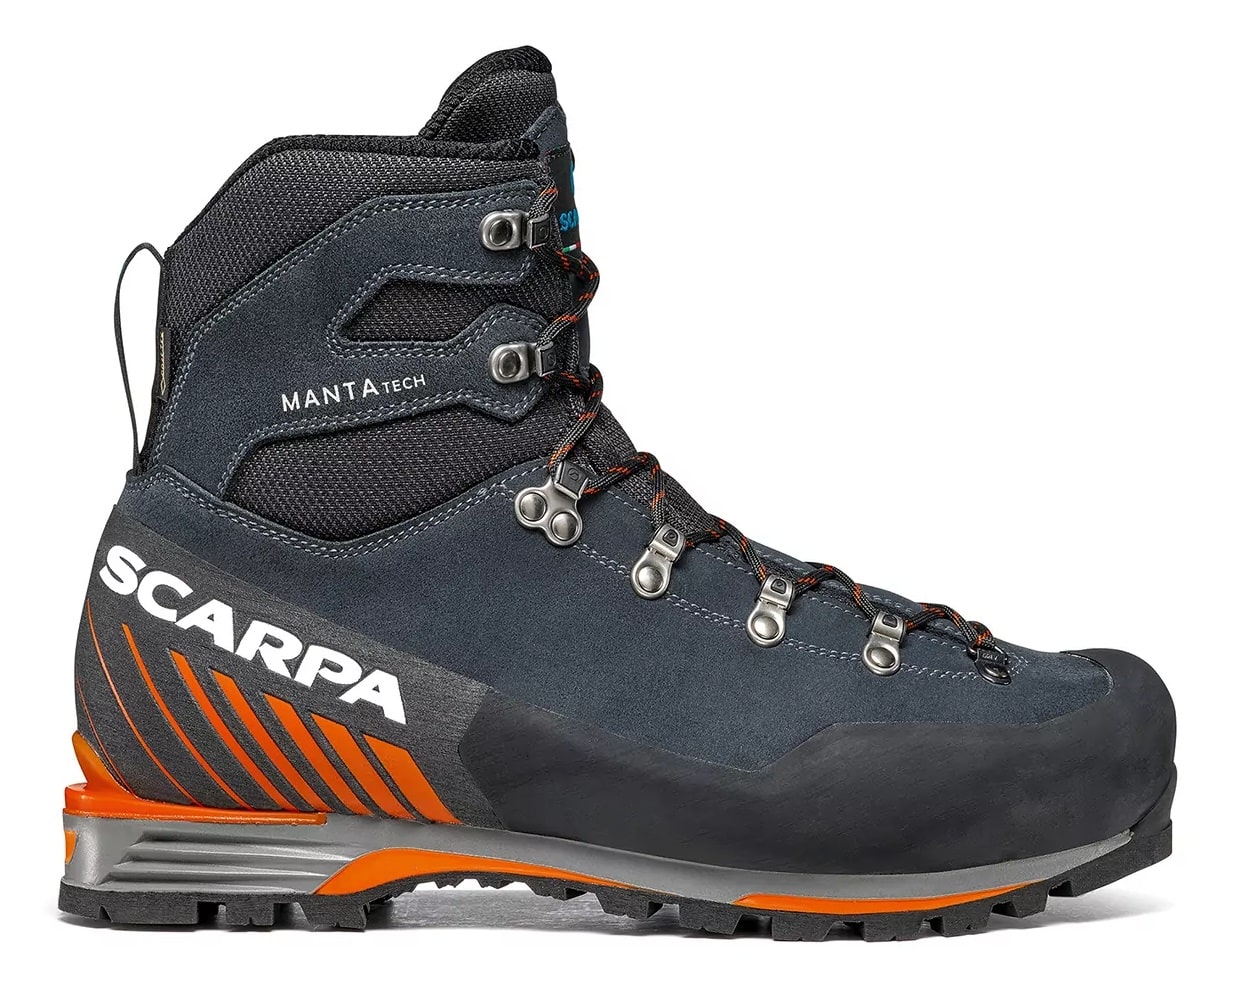 Chaussure de montagne , alpinisme Scarpa Manta tech GTX homme